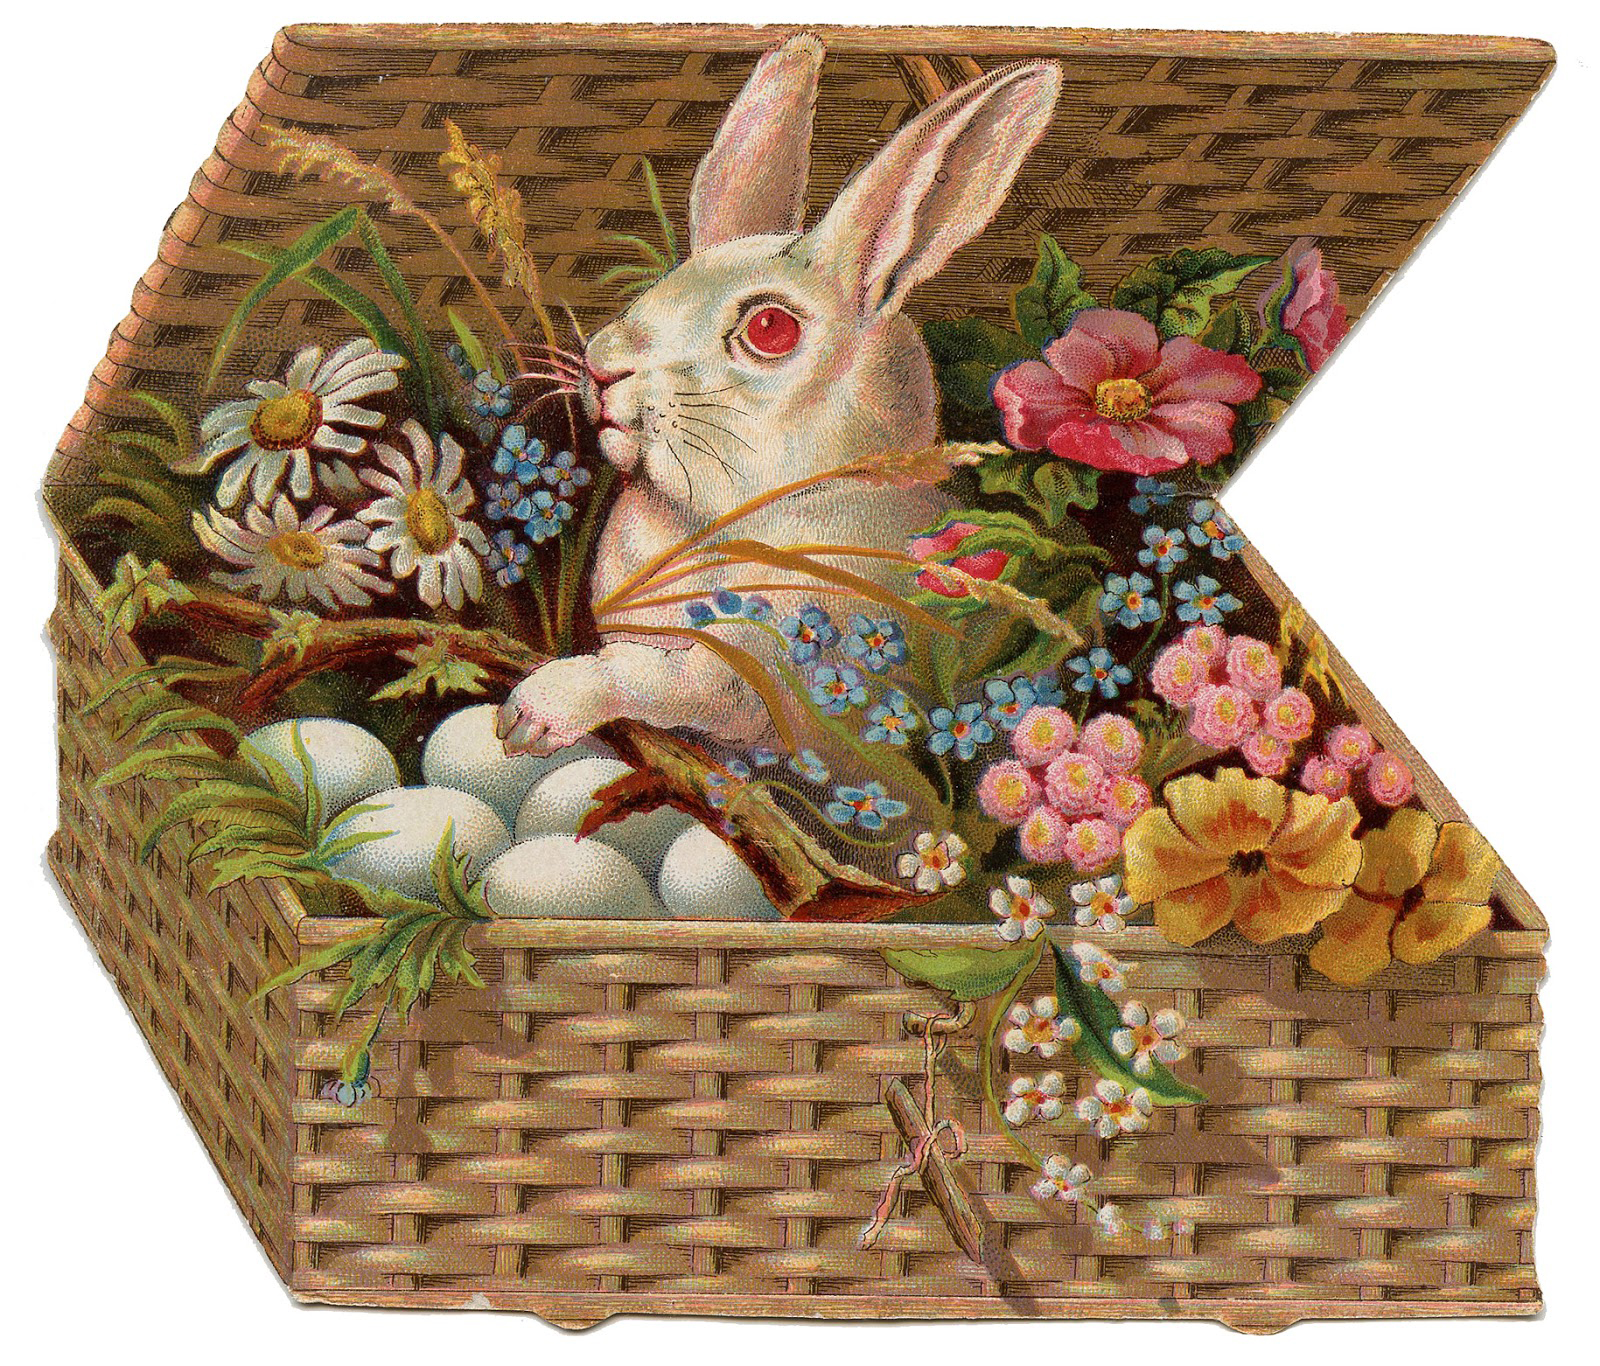 Bunny-Basket-Eggs-GraphicsFairy3